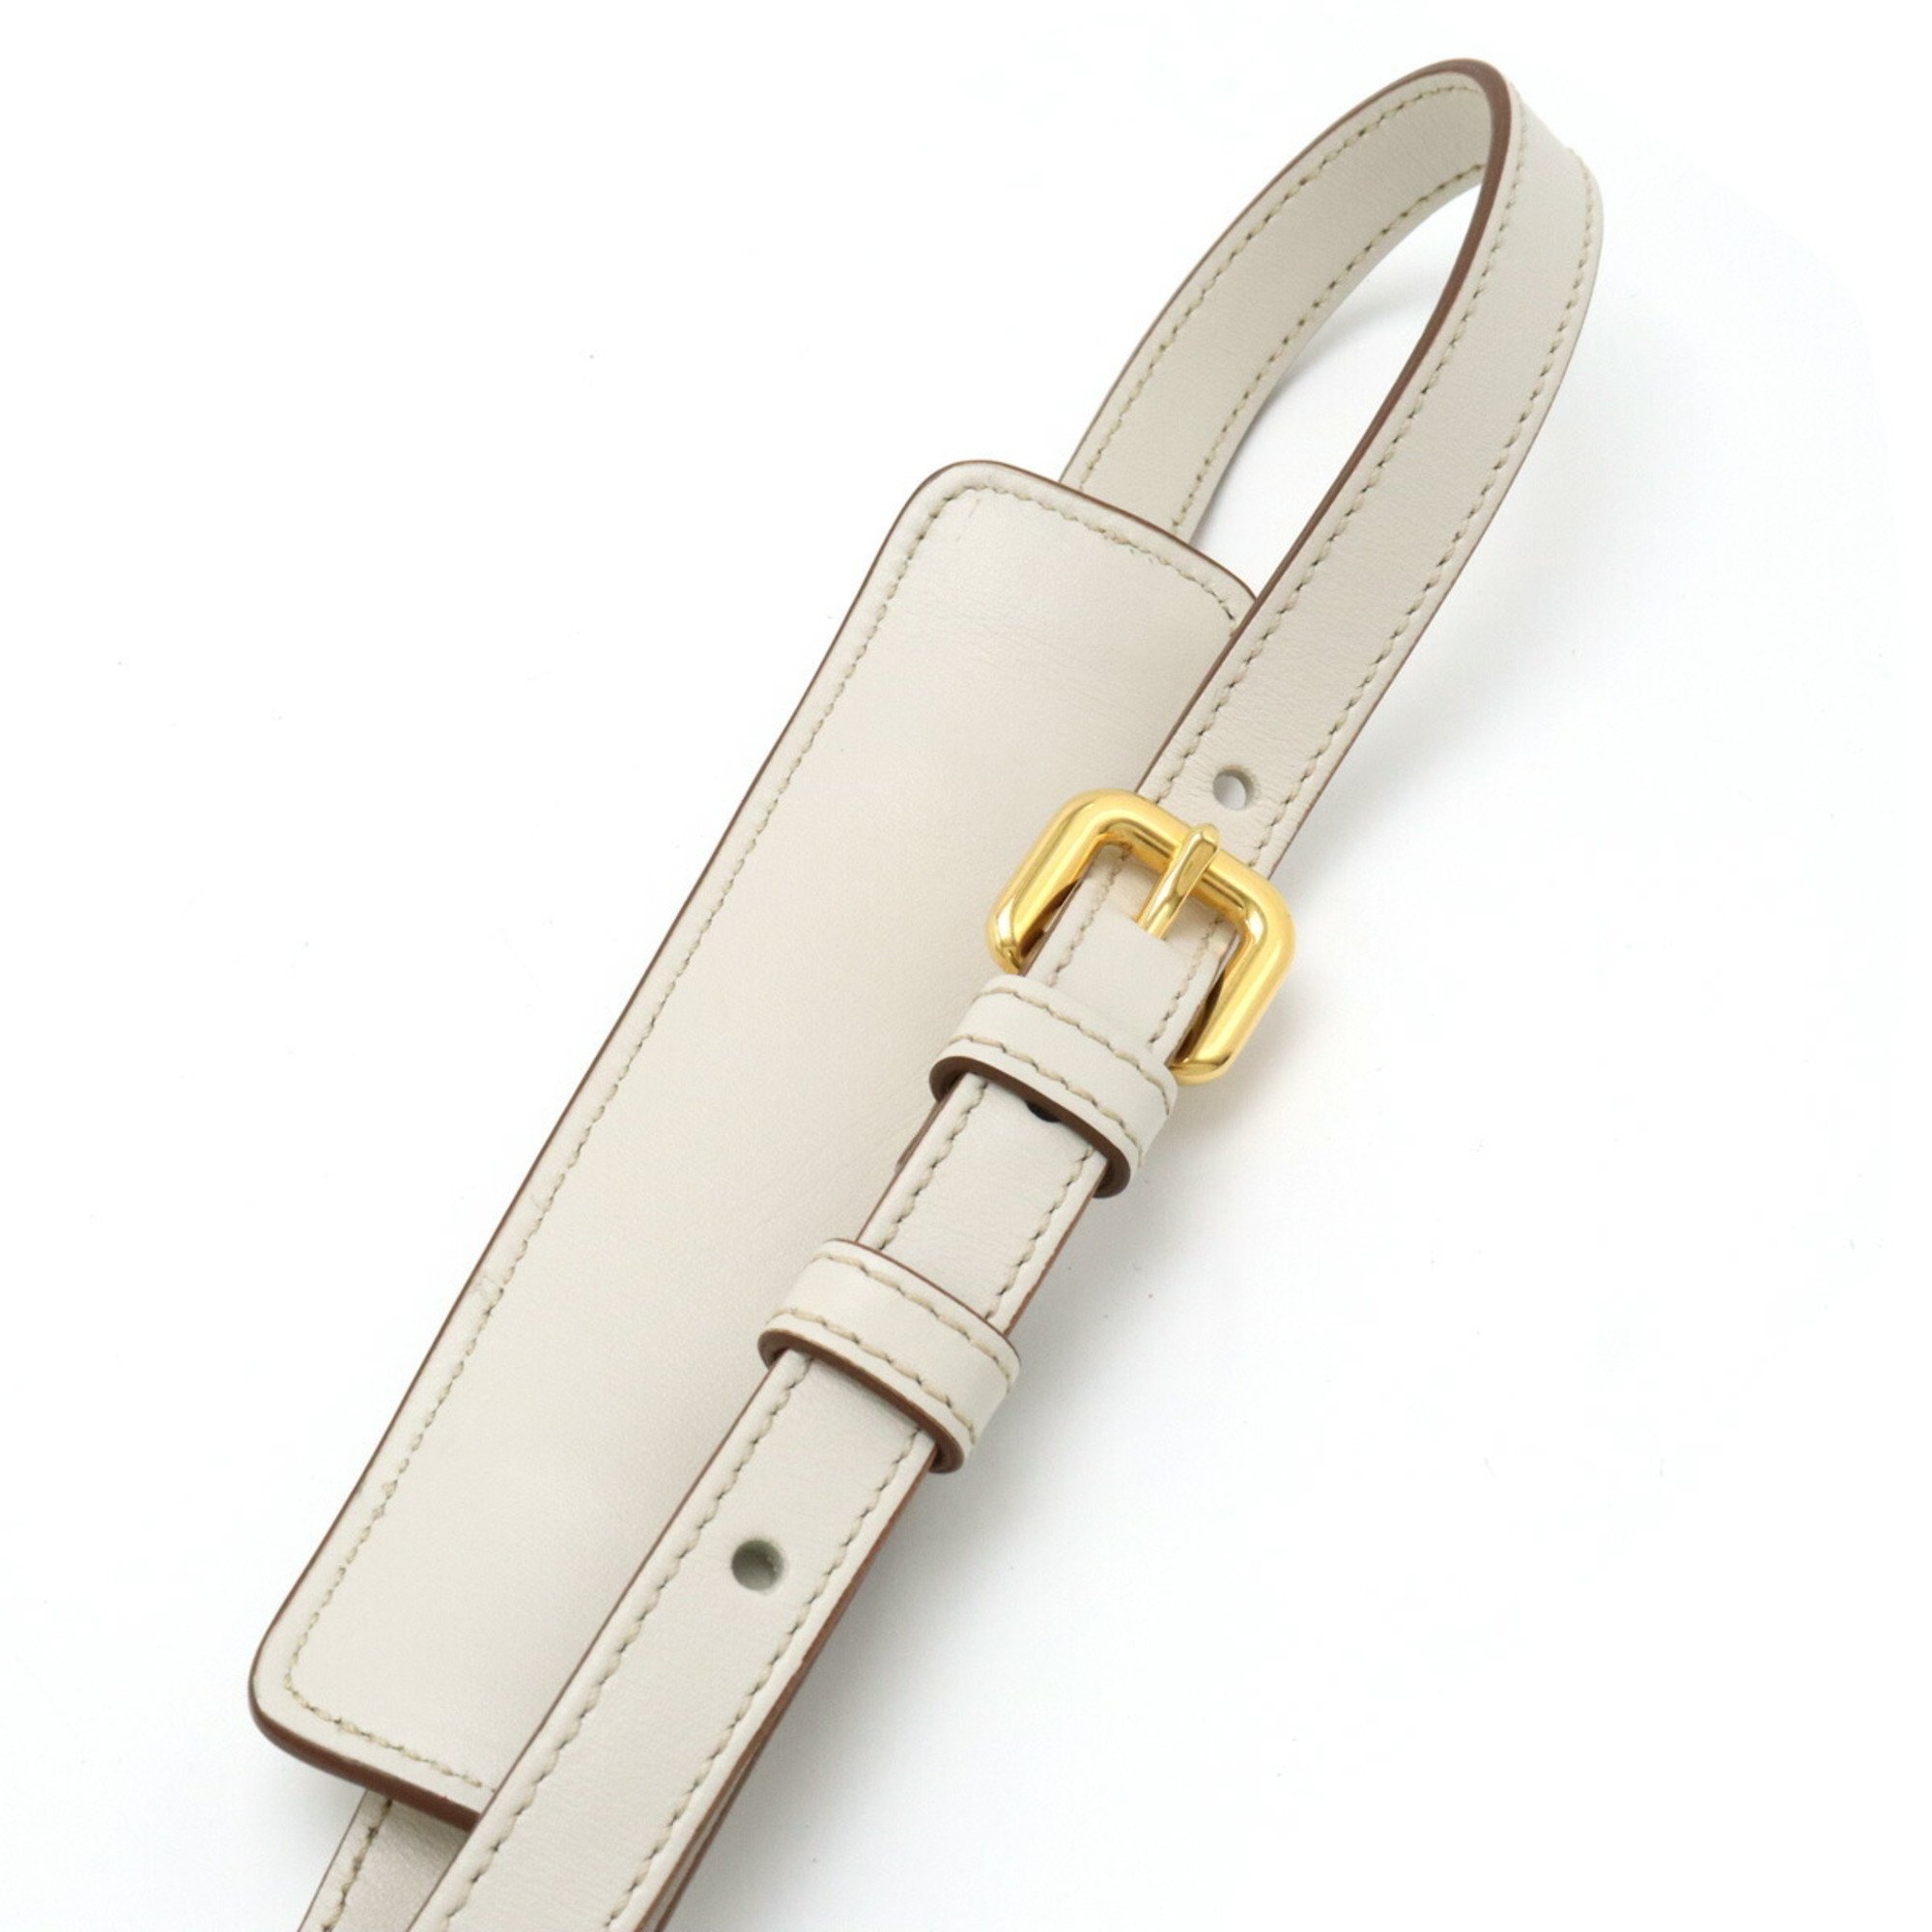 PRADA Prada shoulder strap only leather ivory white